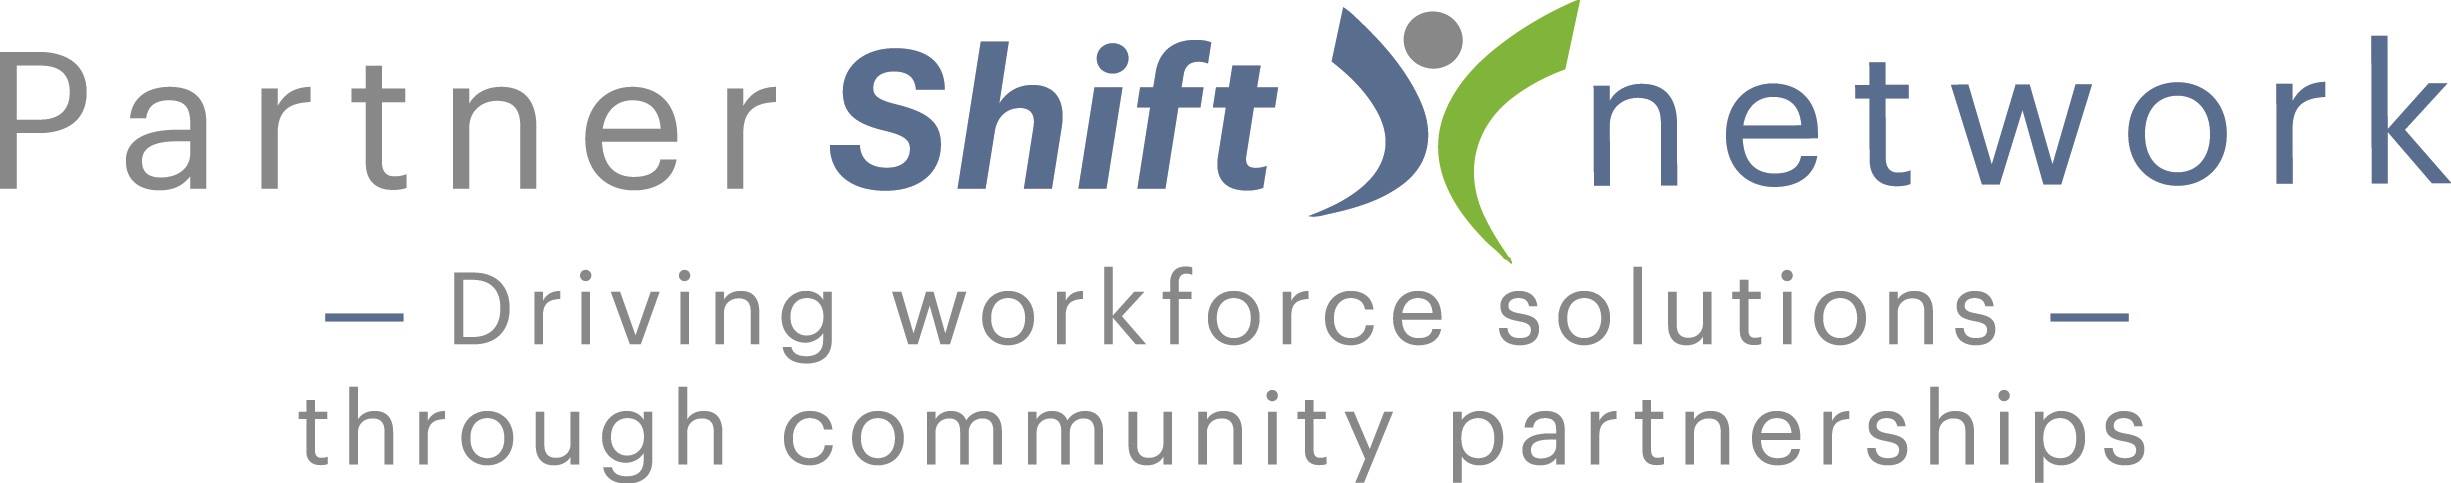 PartnerShift Network Image